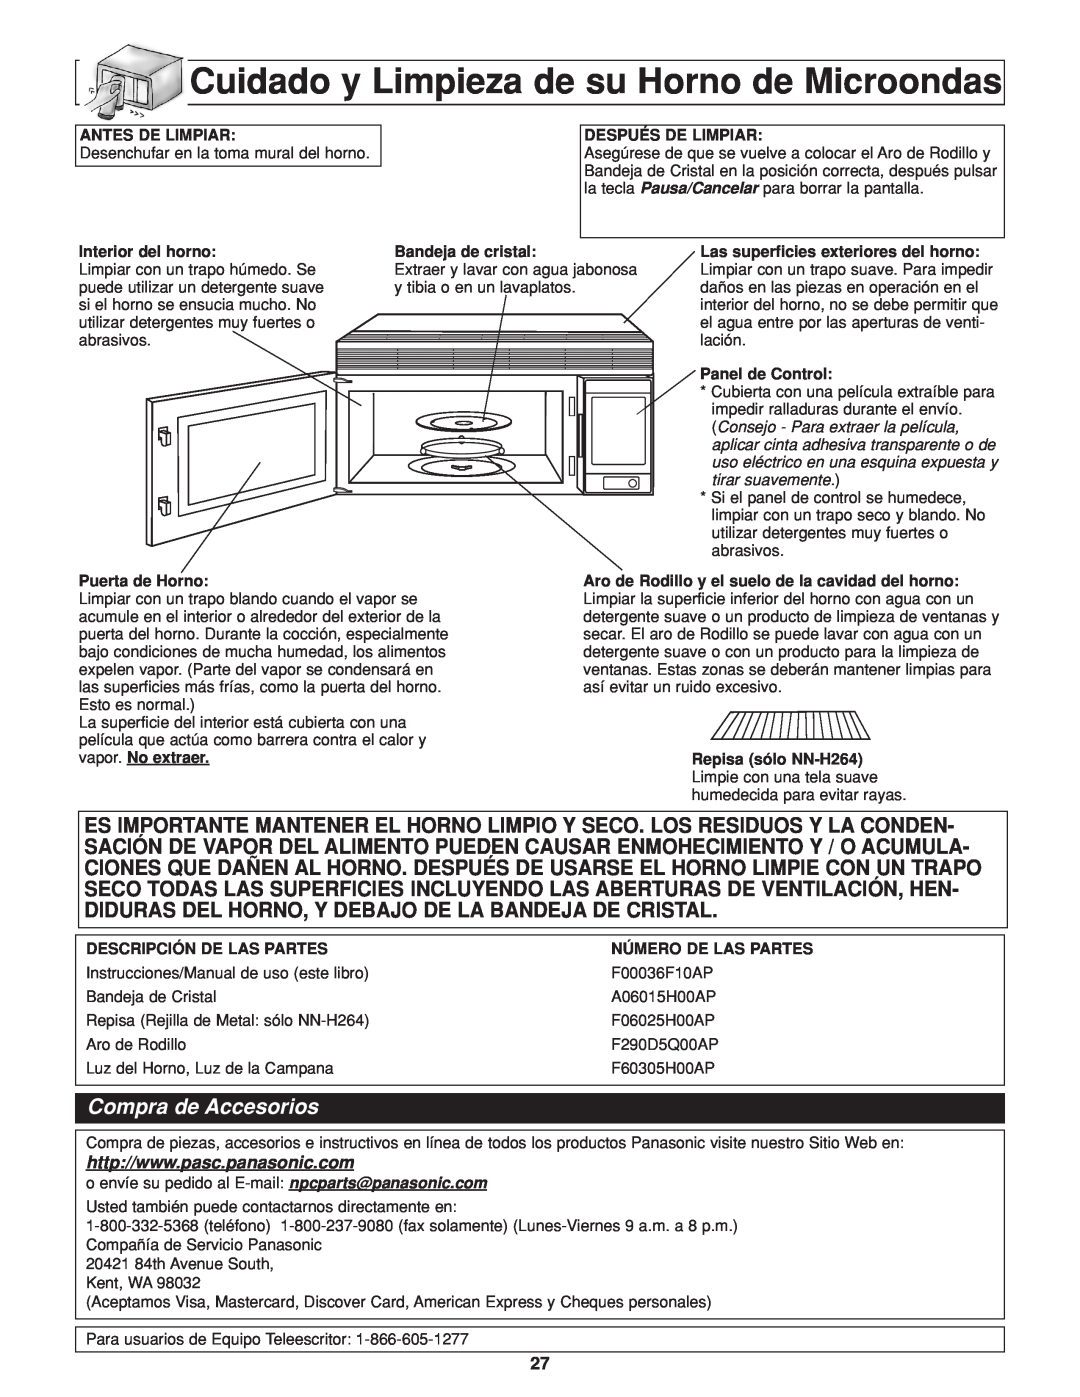 Panasonic NN-H264 important safety instructions Cuidado y Limpieza de su Horno de Microondas, Compra de Accesorios 